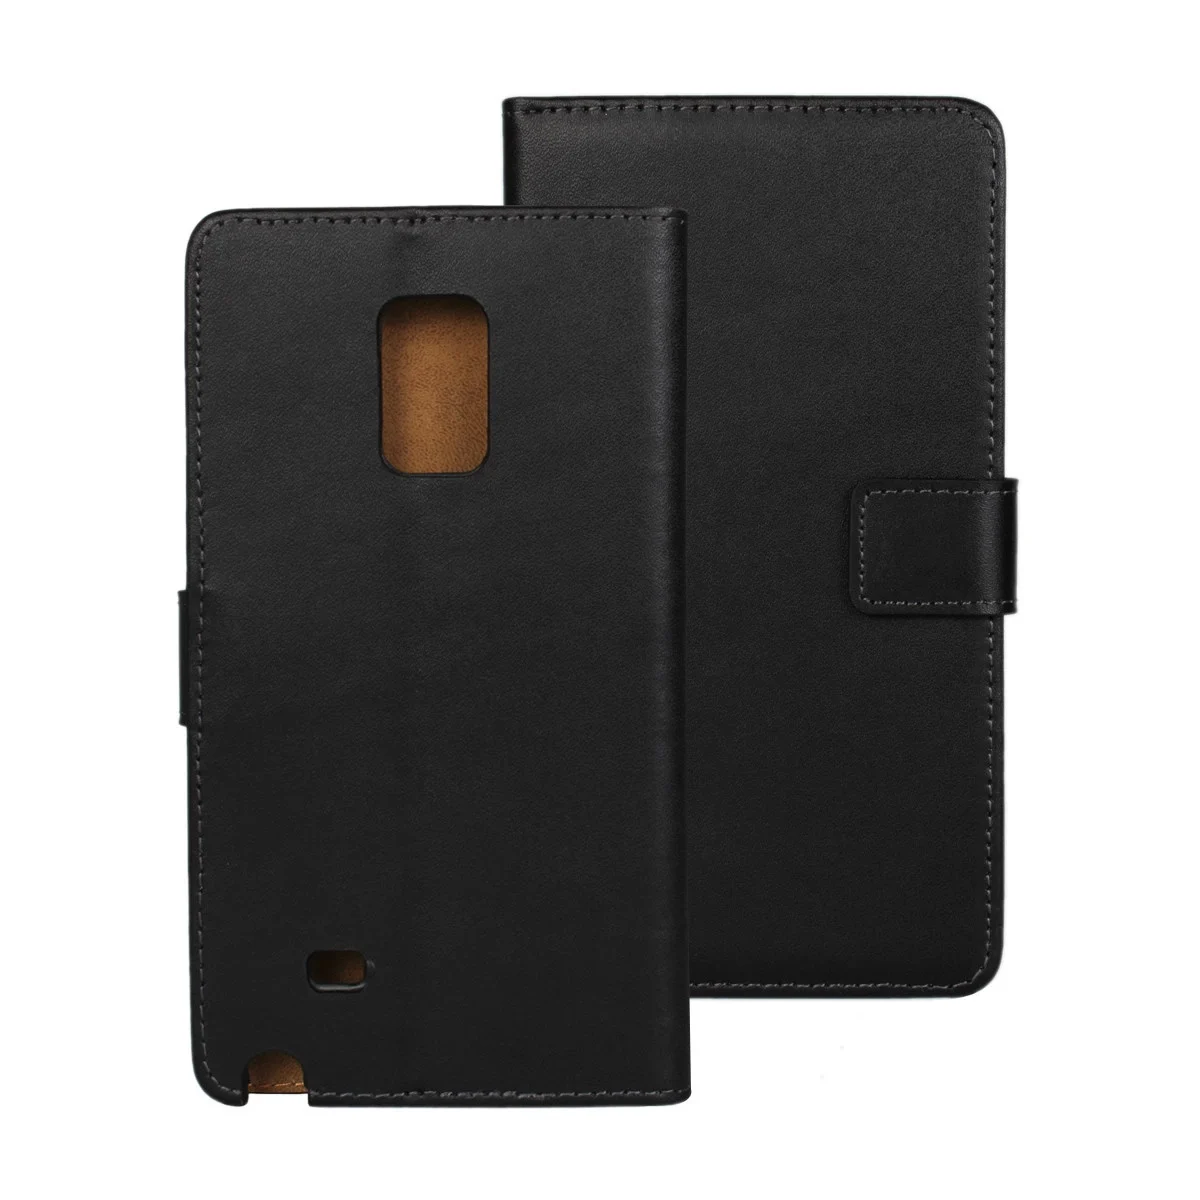 Премиум кожаный чехол-бумажник для samsung Galaxy Note Edge N9150 N915F чехол Роскошный флип-чехол держатель для карт GG